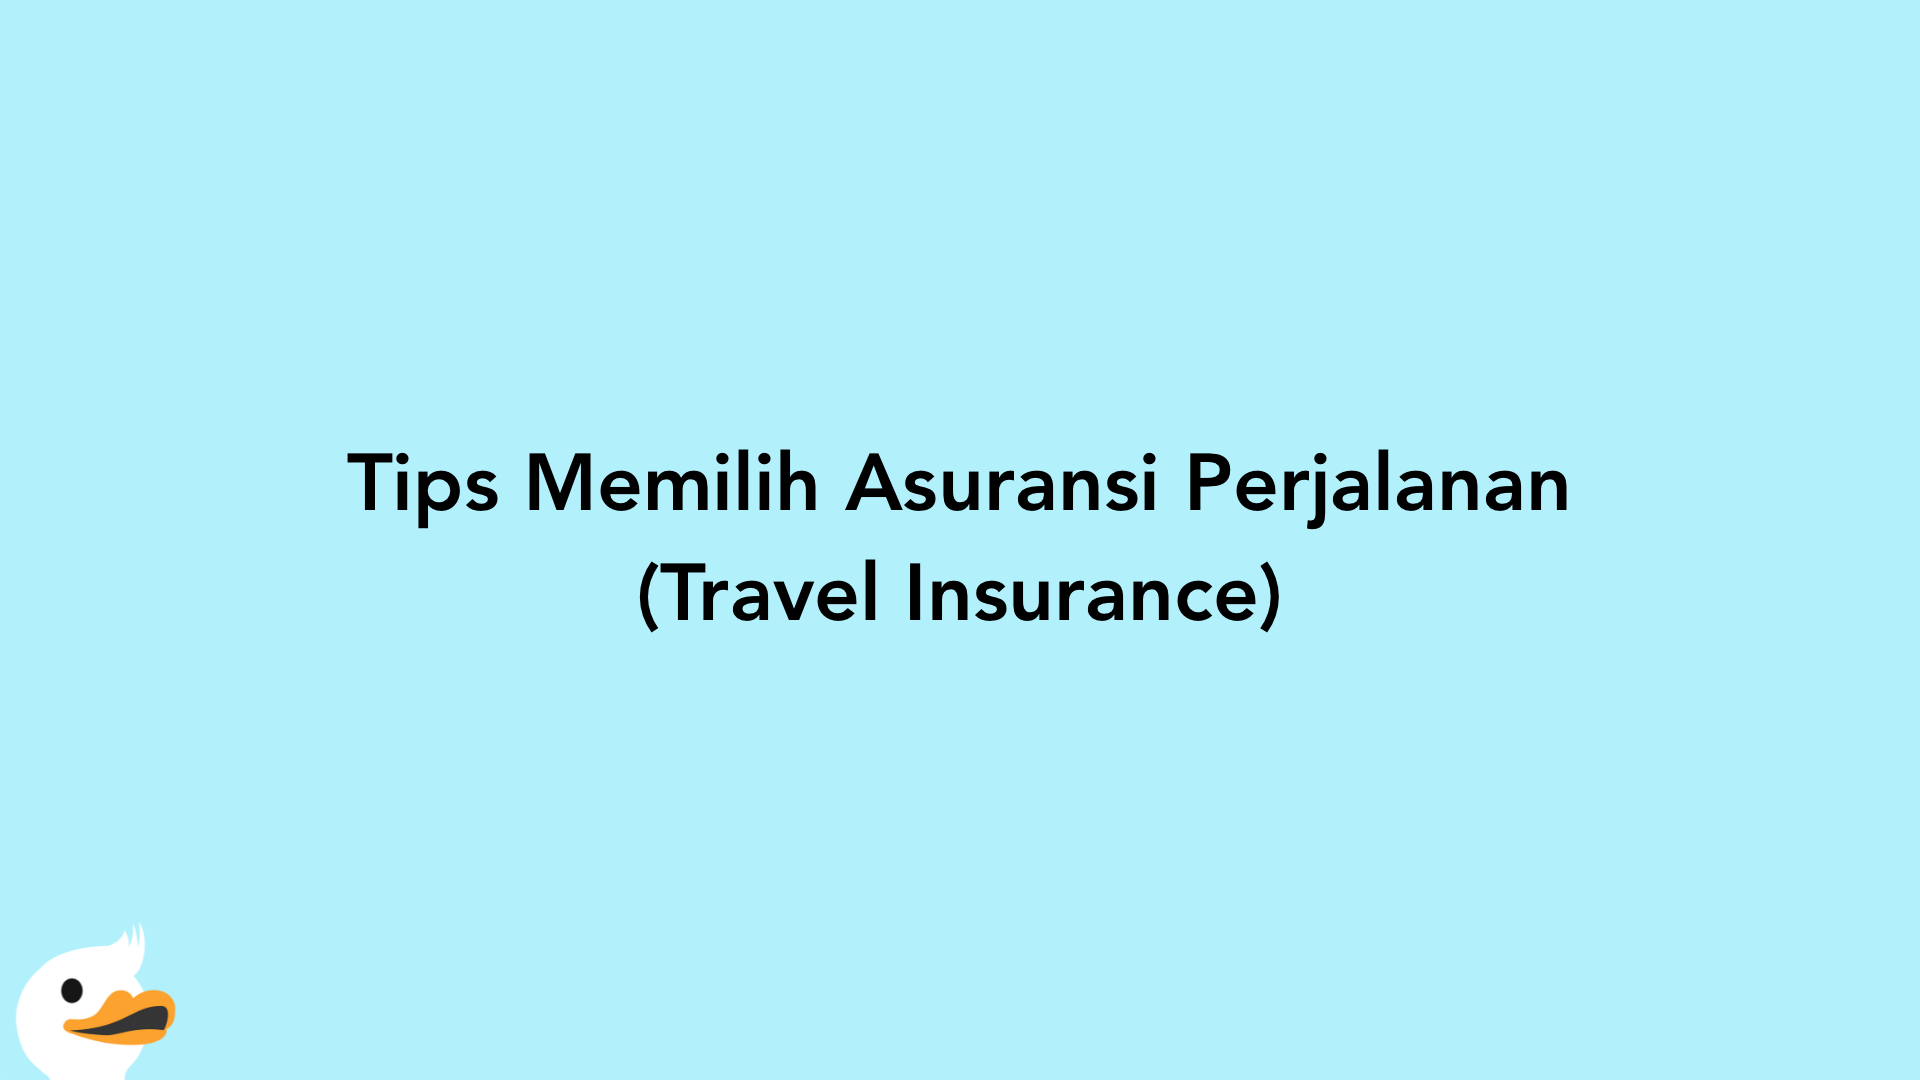 Tips Memilih Asuransi Perjalanan (Travel Insurance)